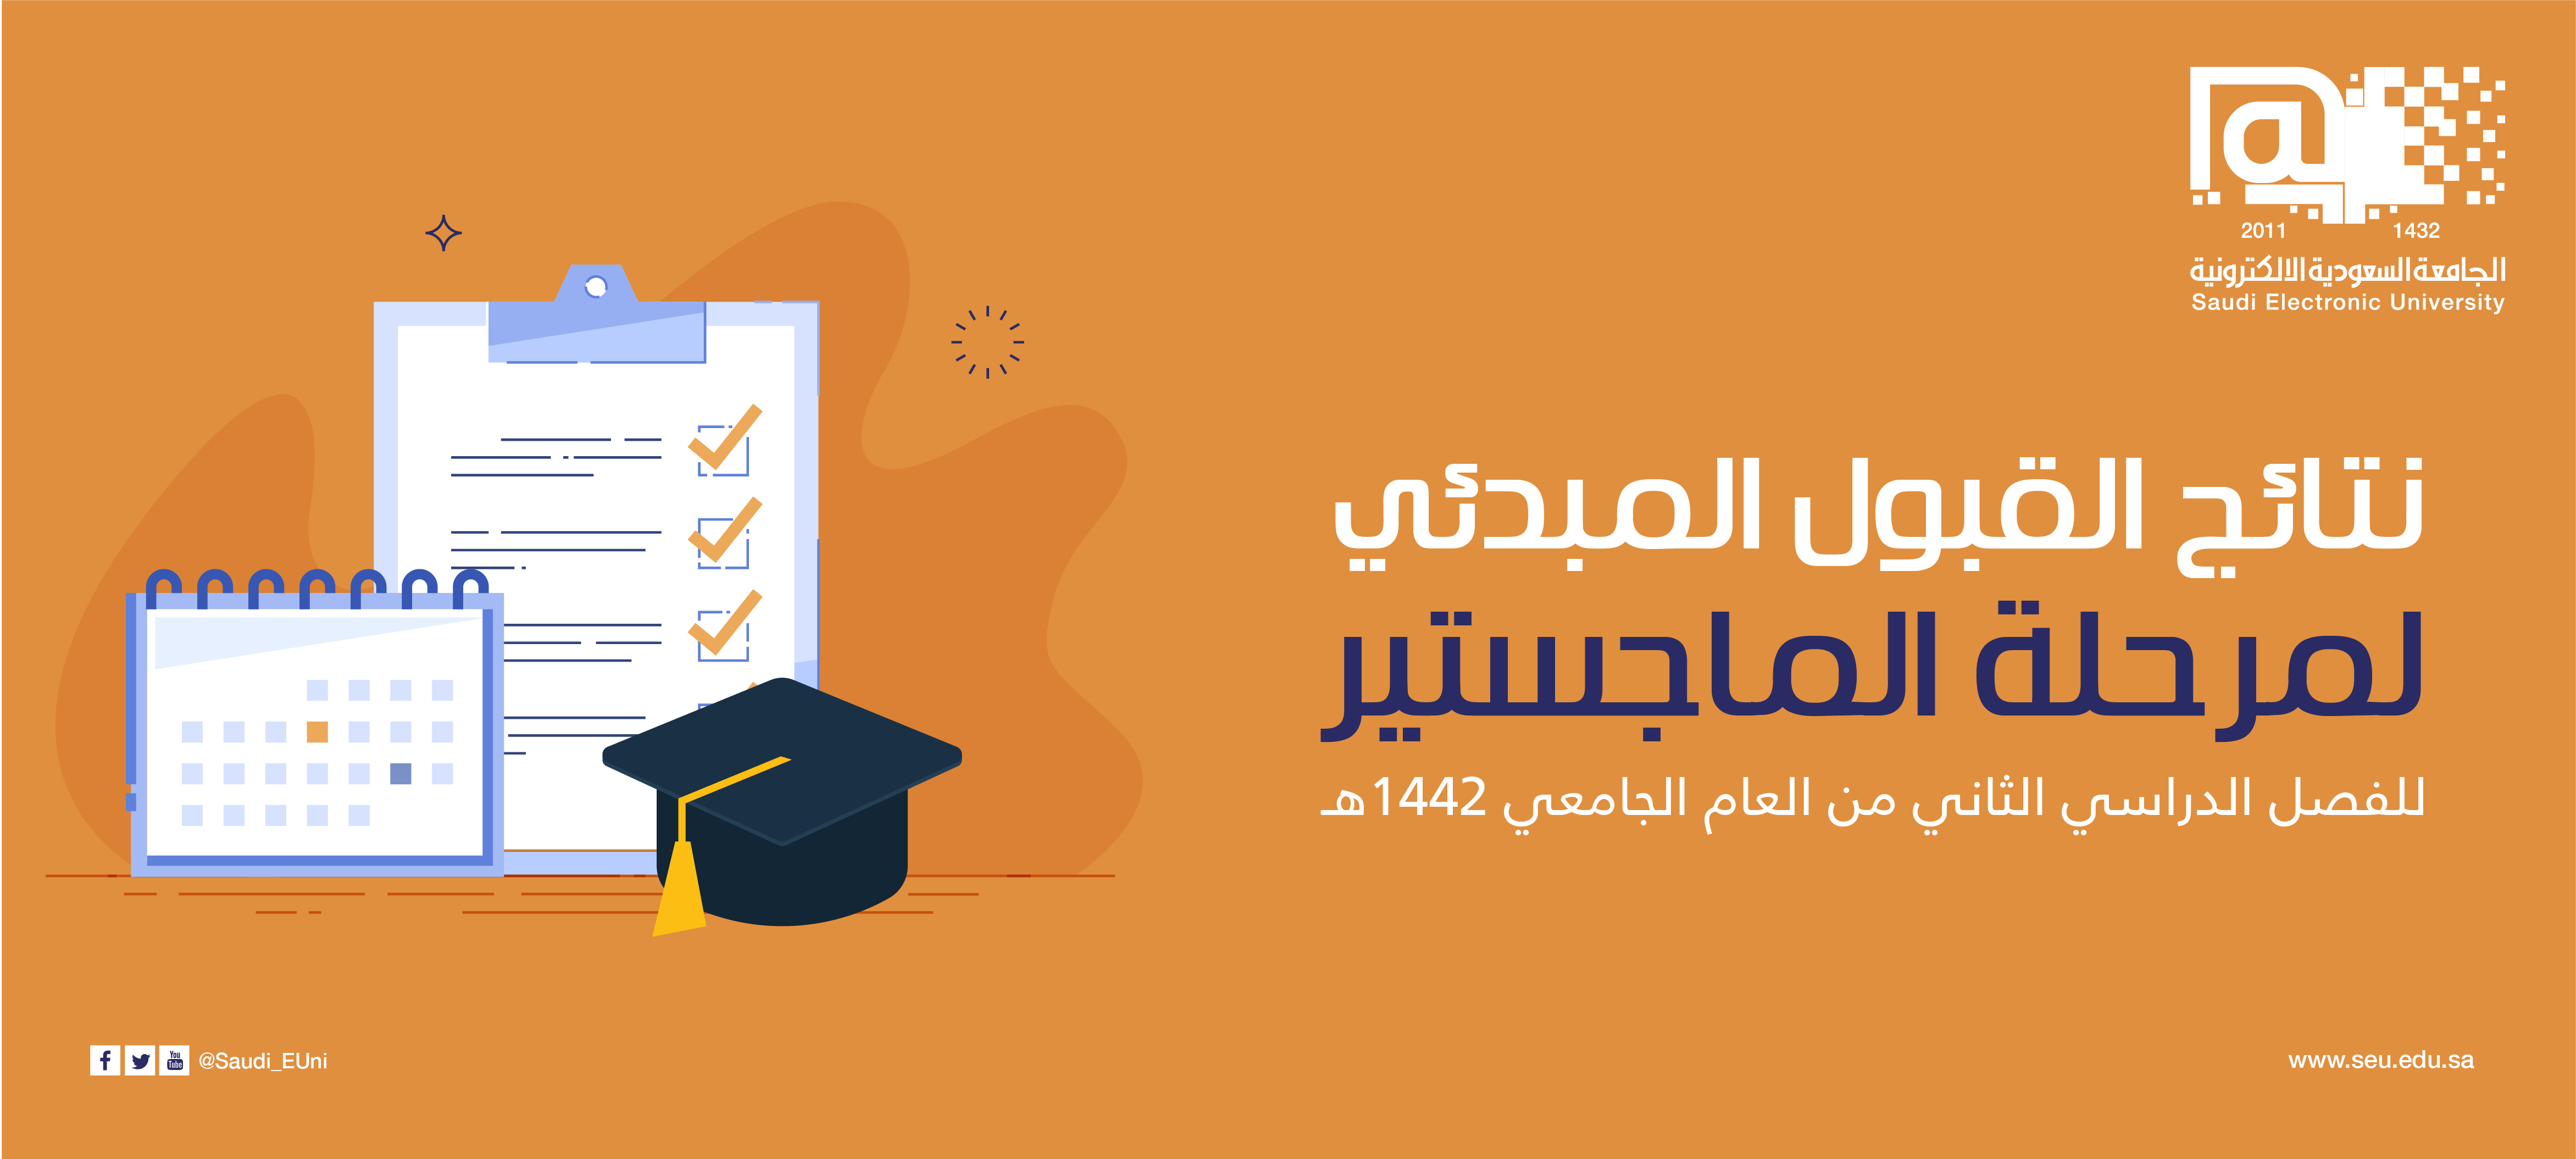 نتائج قبول الجامعه السعوديه الالكترونيه